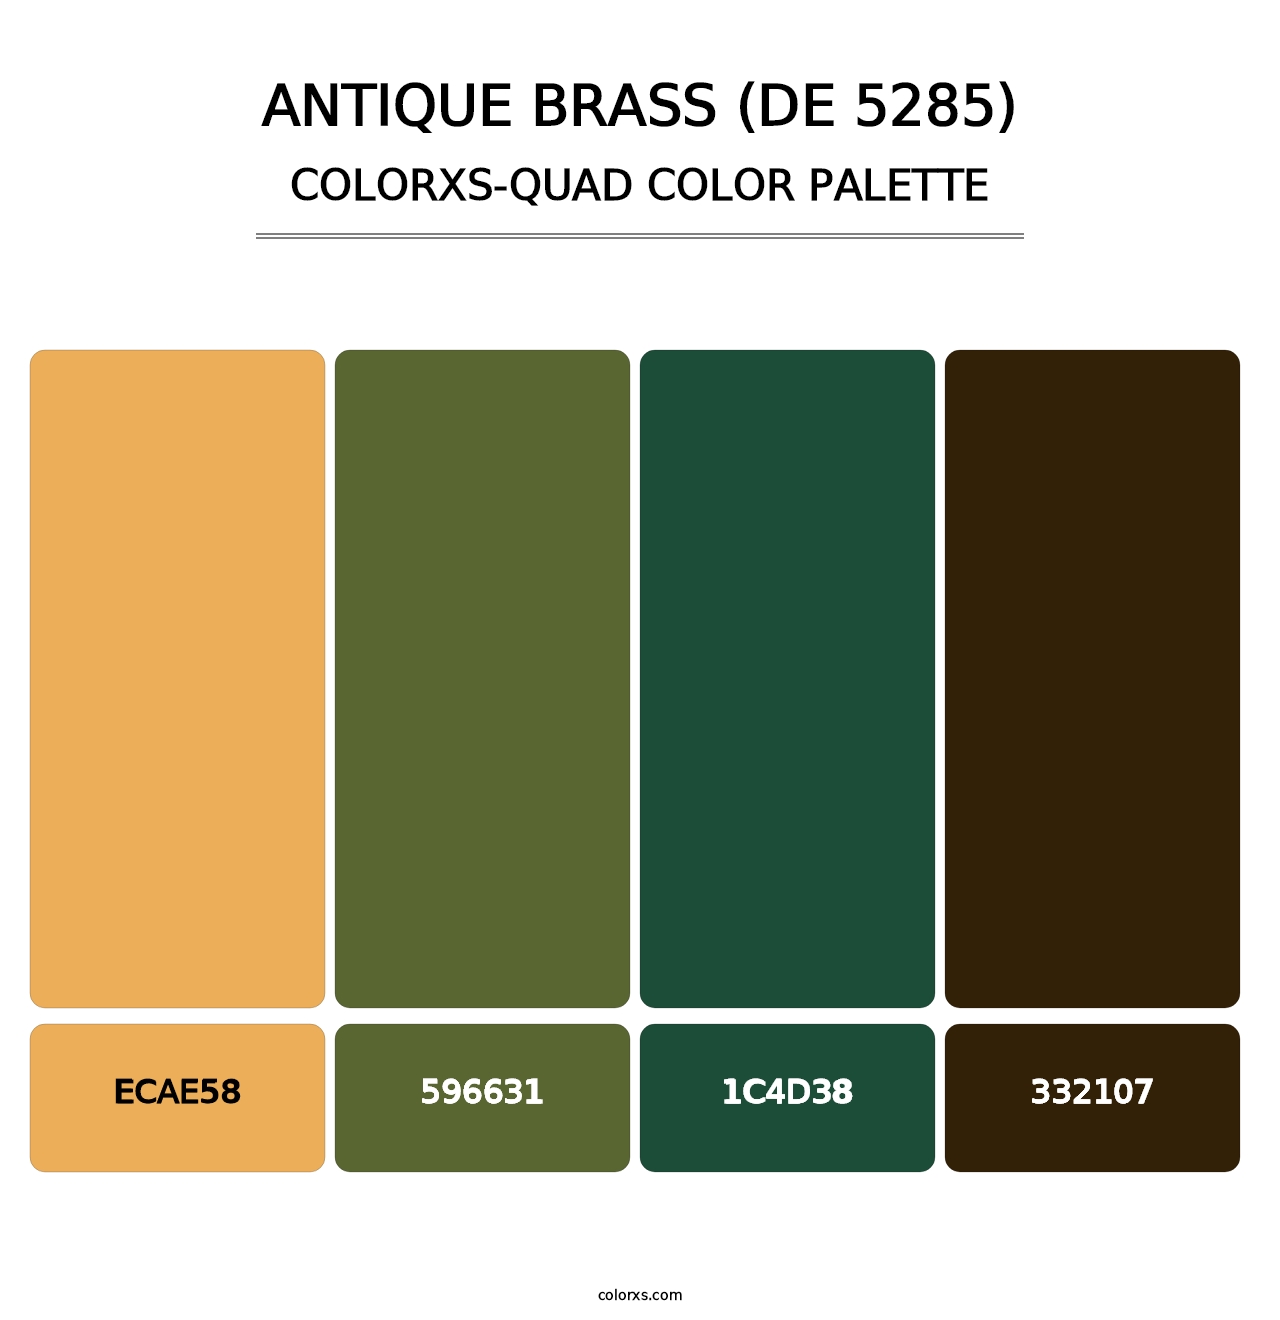 Antique Brass (DE 5285) - Colorxs Quad Palette